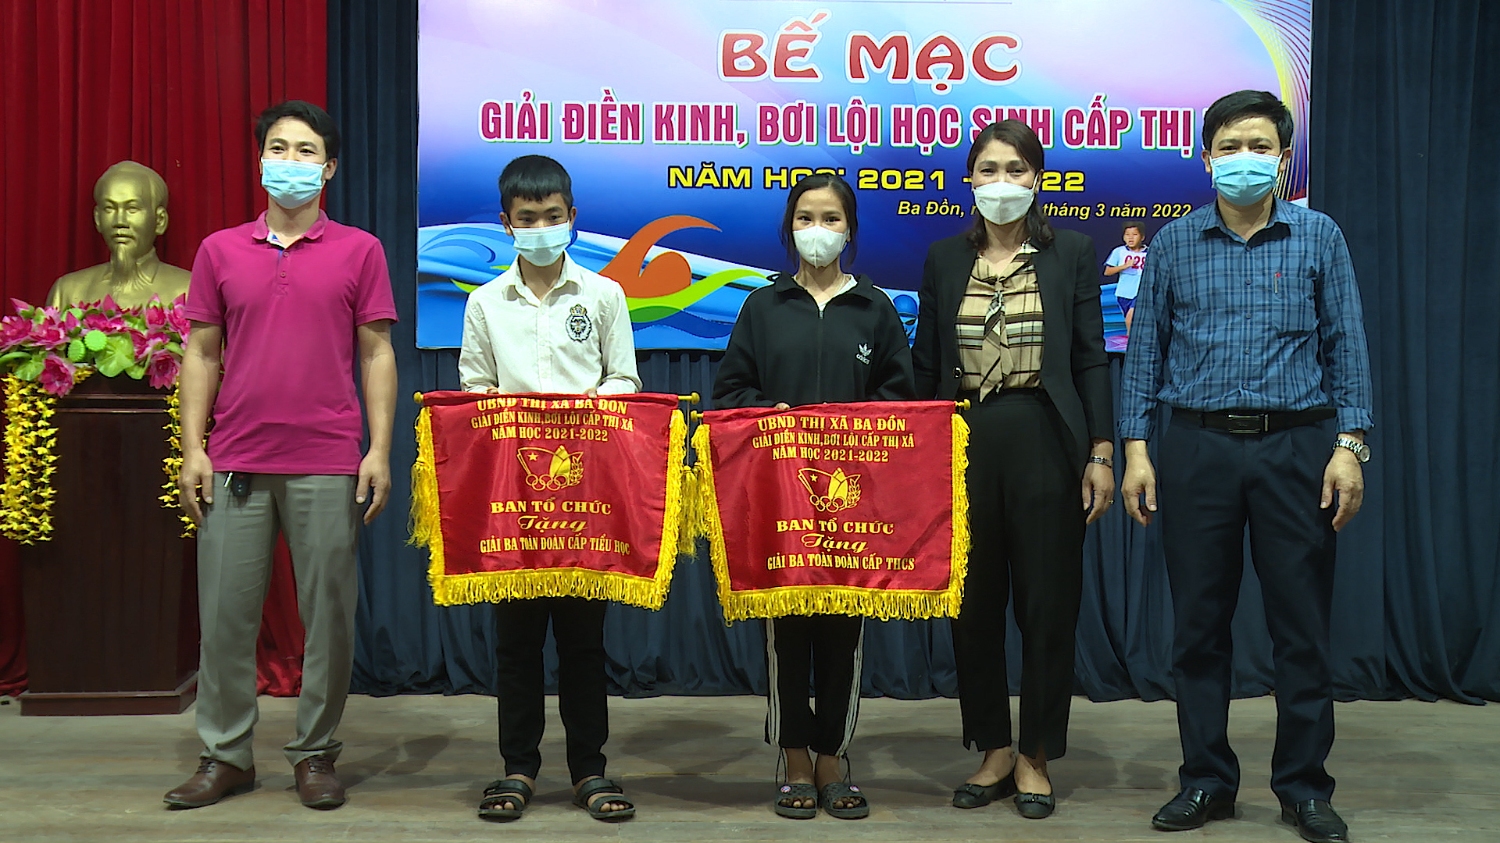 Ban tổ chức đã trao giải Ba cấp THCS cho đoàn trường THCS Quảng Sơn và cấp Tiểu học cho đoàn trường TH Quảng Tiên